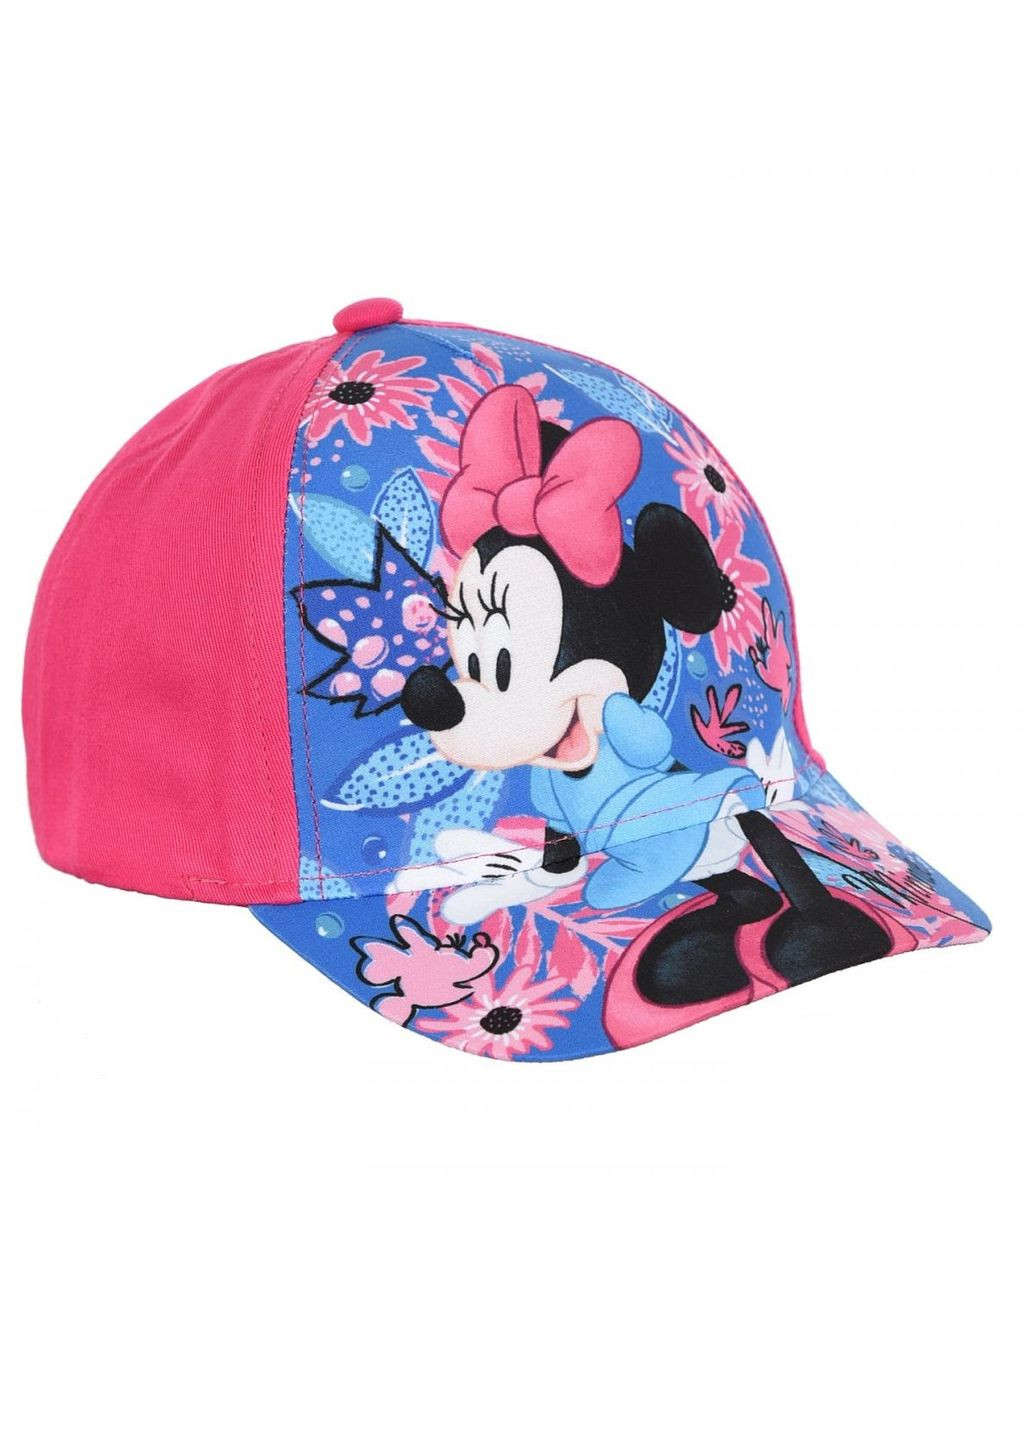 Кепка Minnie Mouse (Минни Маус) UE40012 EU Disney кепка (290252675)